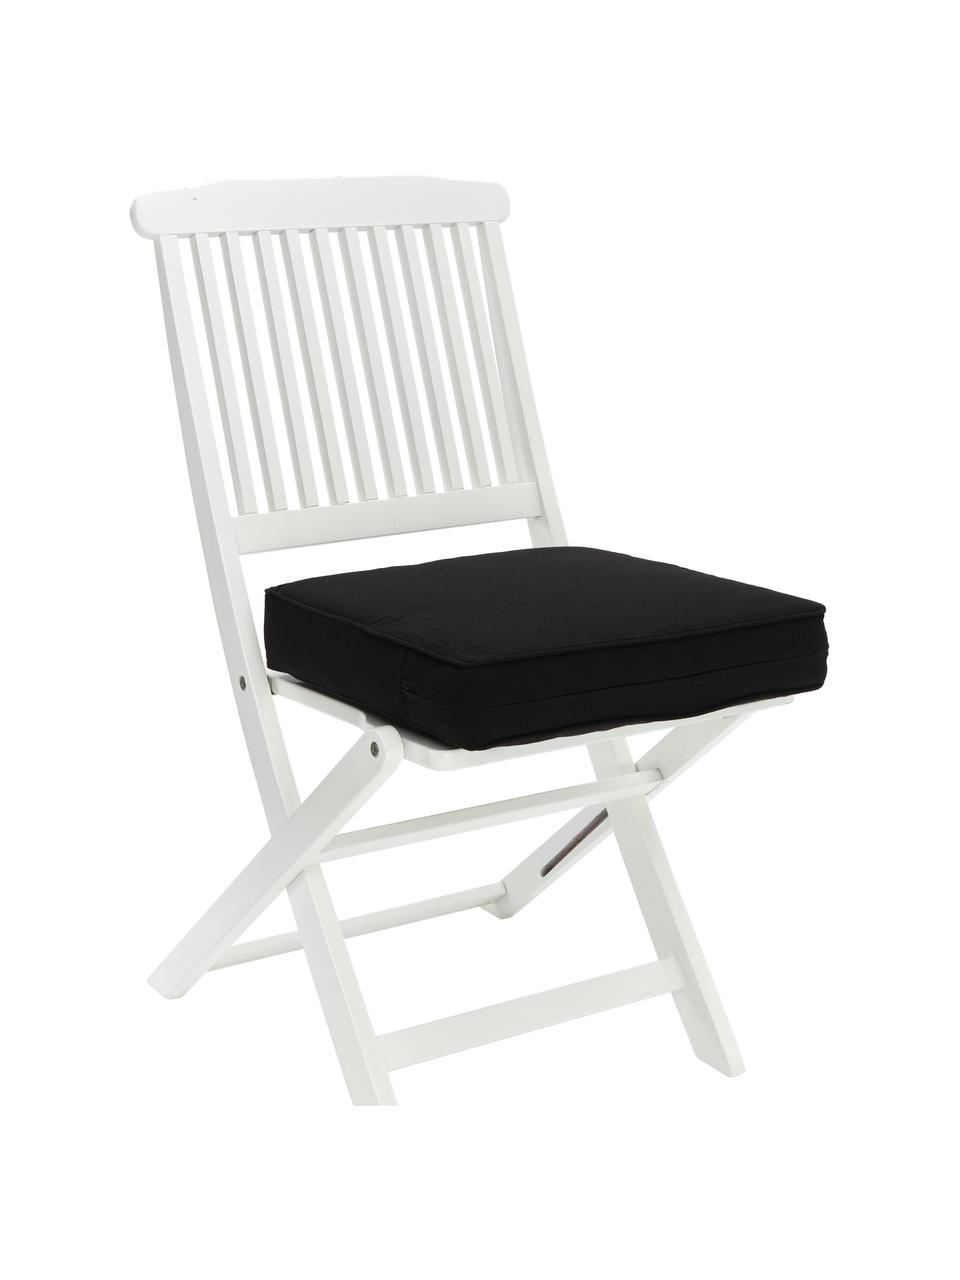 Coussin de chaise épais noir Zoey, Noir, larg. 40 x long. 40 cm